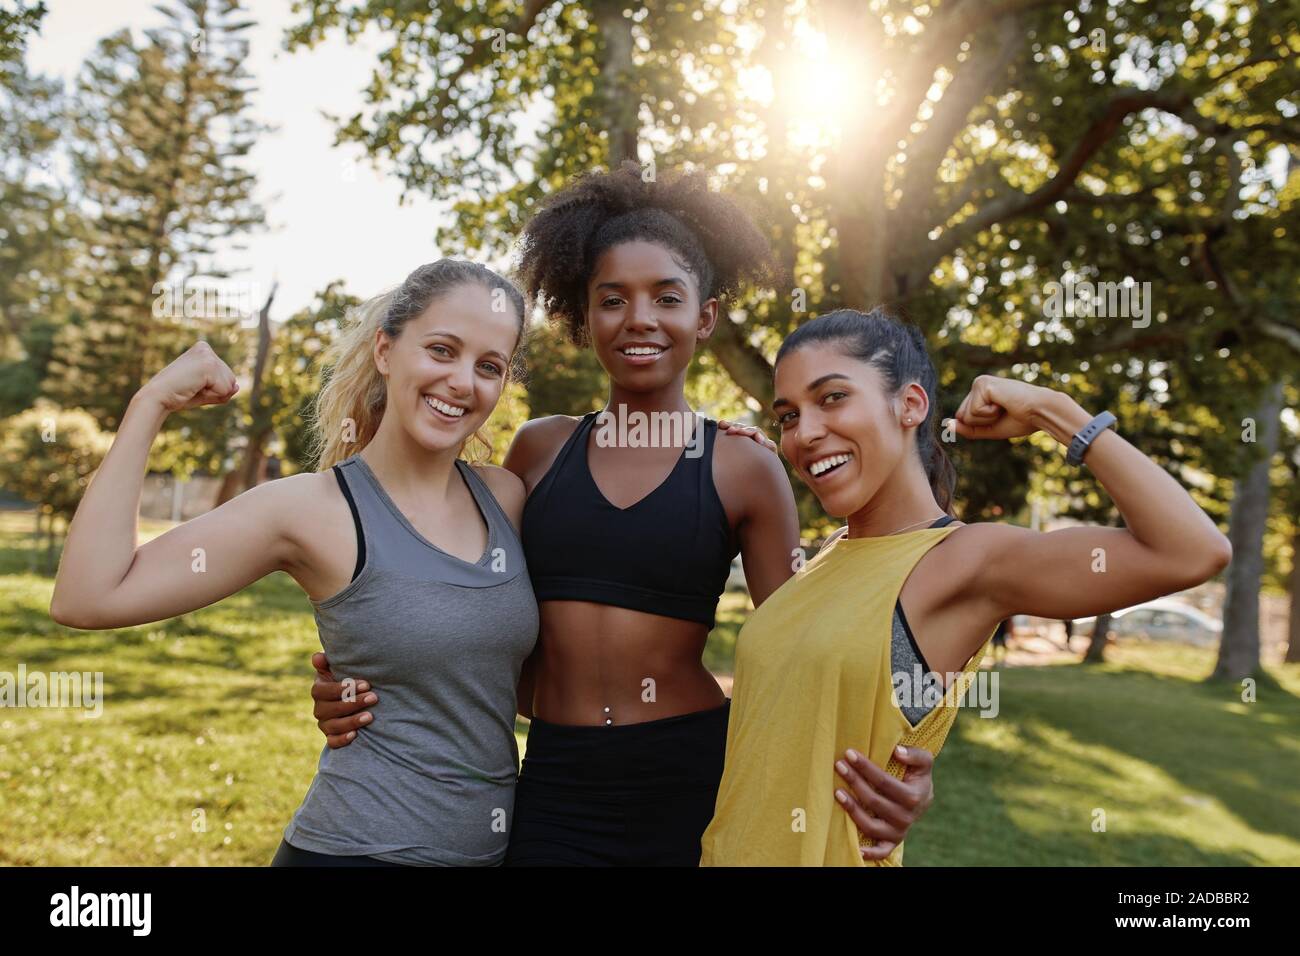 Portrait einer afrikanischen amerikanischen weiblichen stehende Frau mit ihren beiden unterschiedlichen Freunde ihre Muskel biegen im Park - 3 Frau zeigt Stärke und Stockfoto